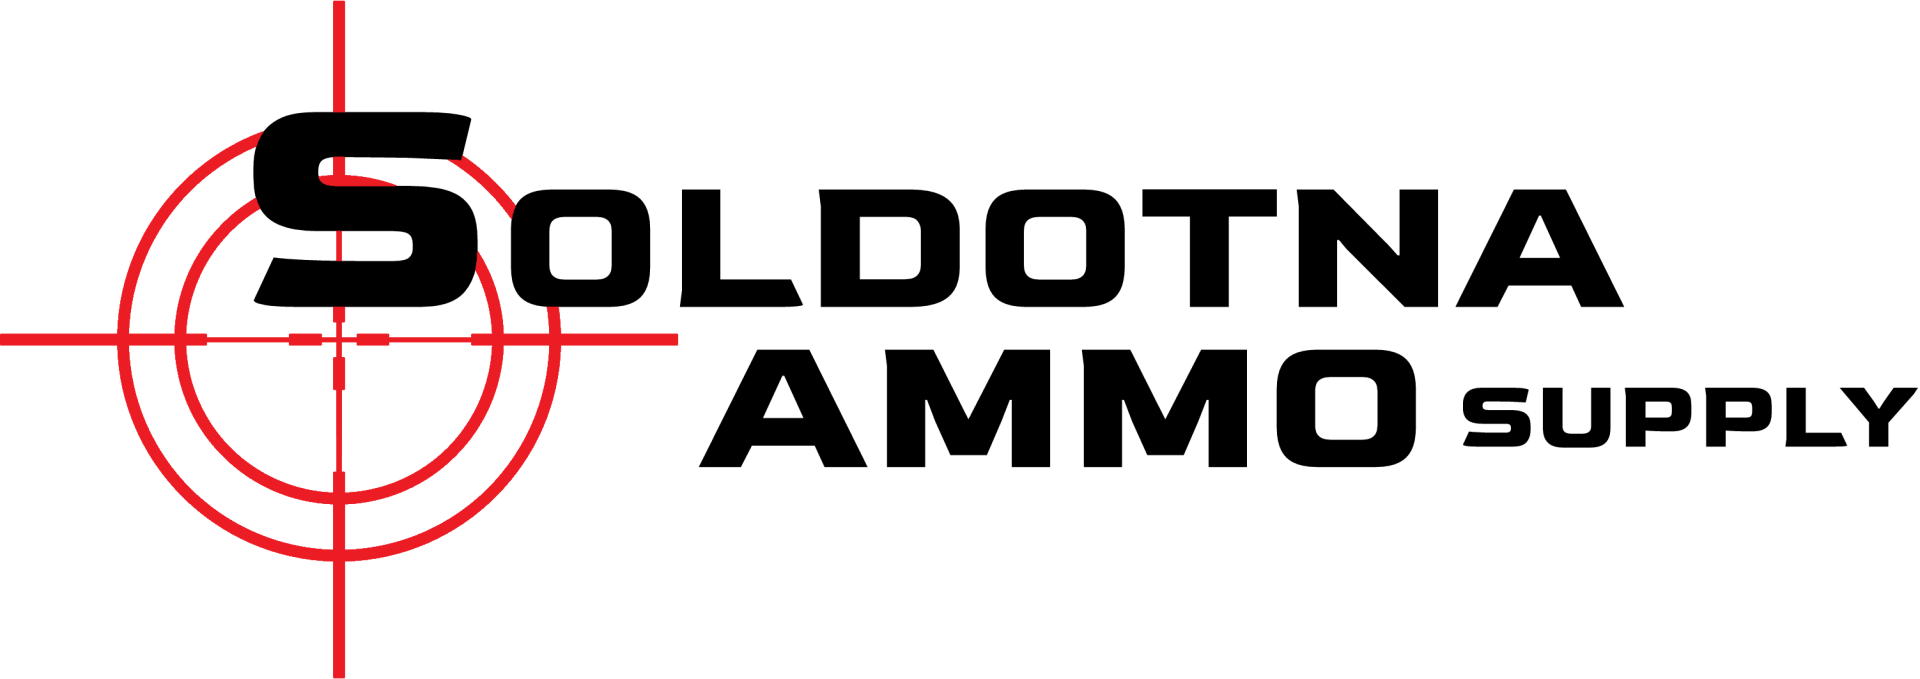 Soldotna Ammo Supply